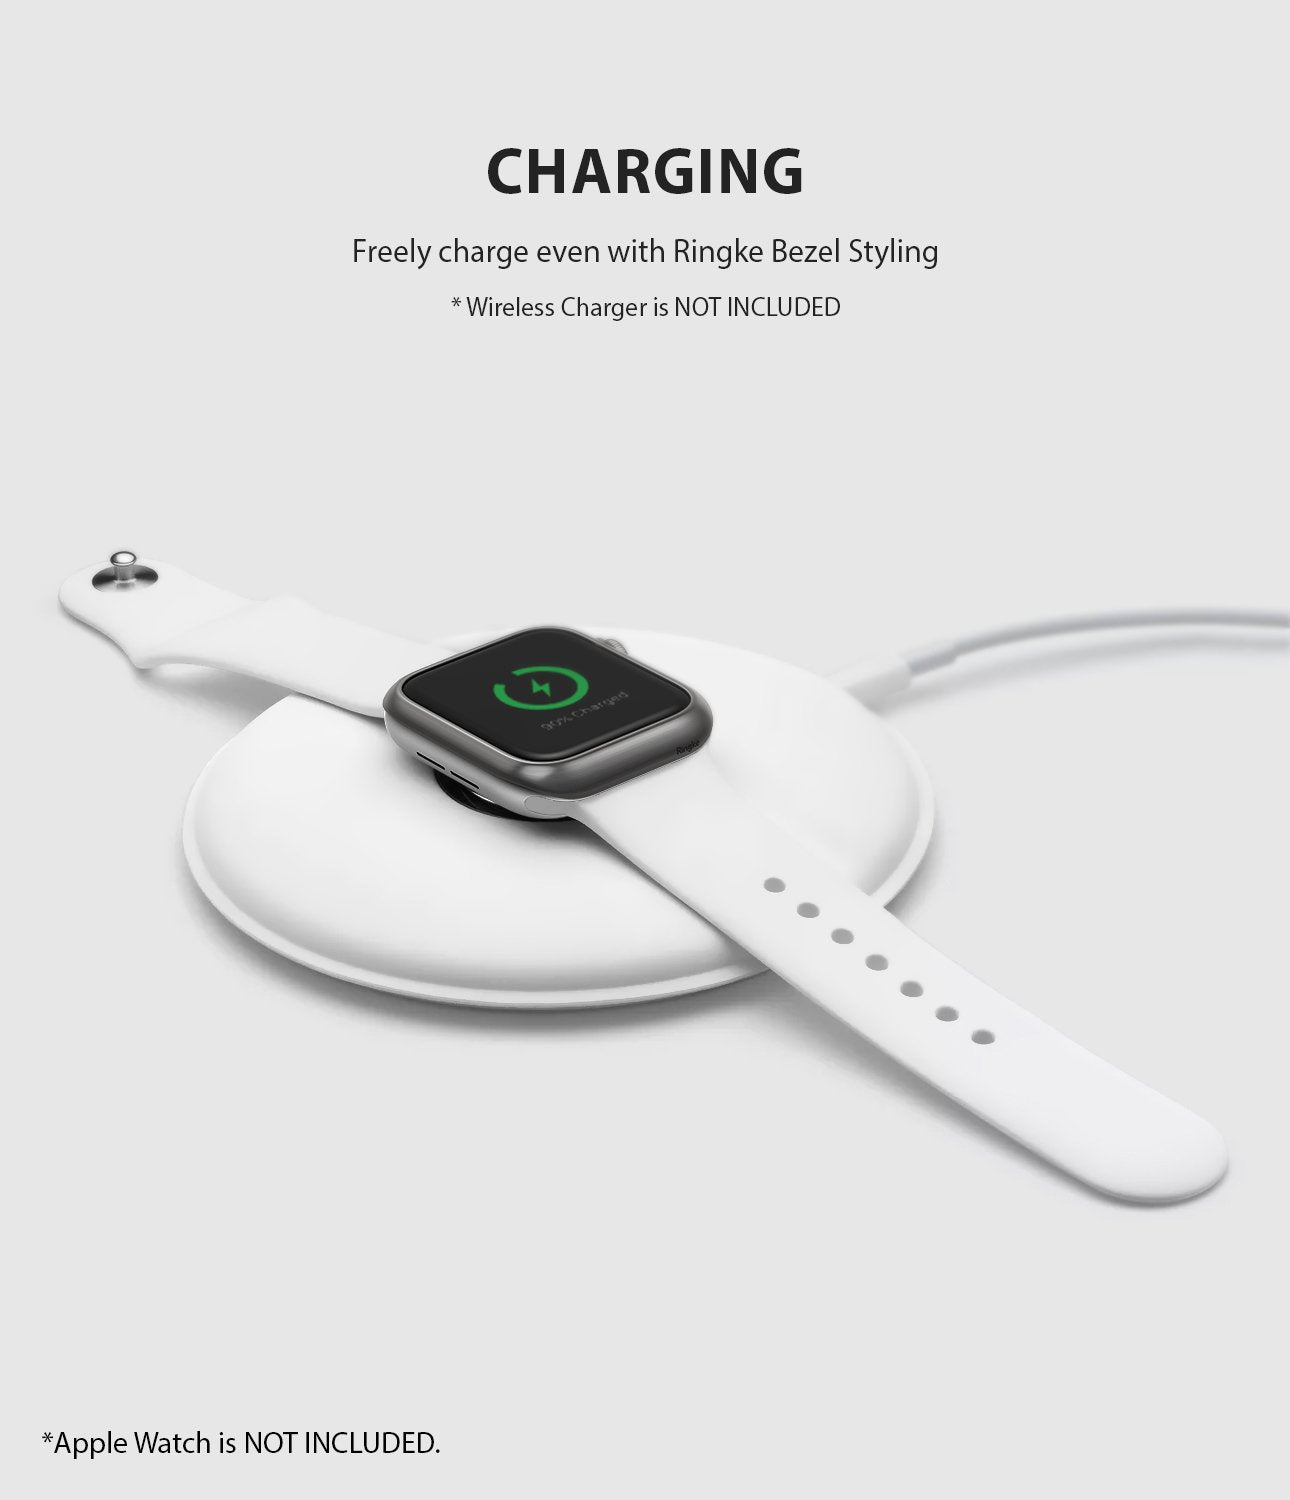 ringke bezel styling 40-06 Matte Silver stainless steel on apple watch series 6 / 5 / 4 / SE 40mm wireless charging